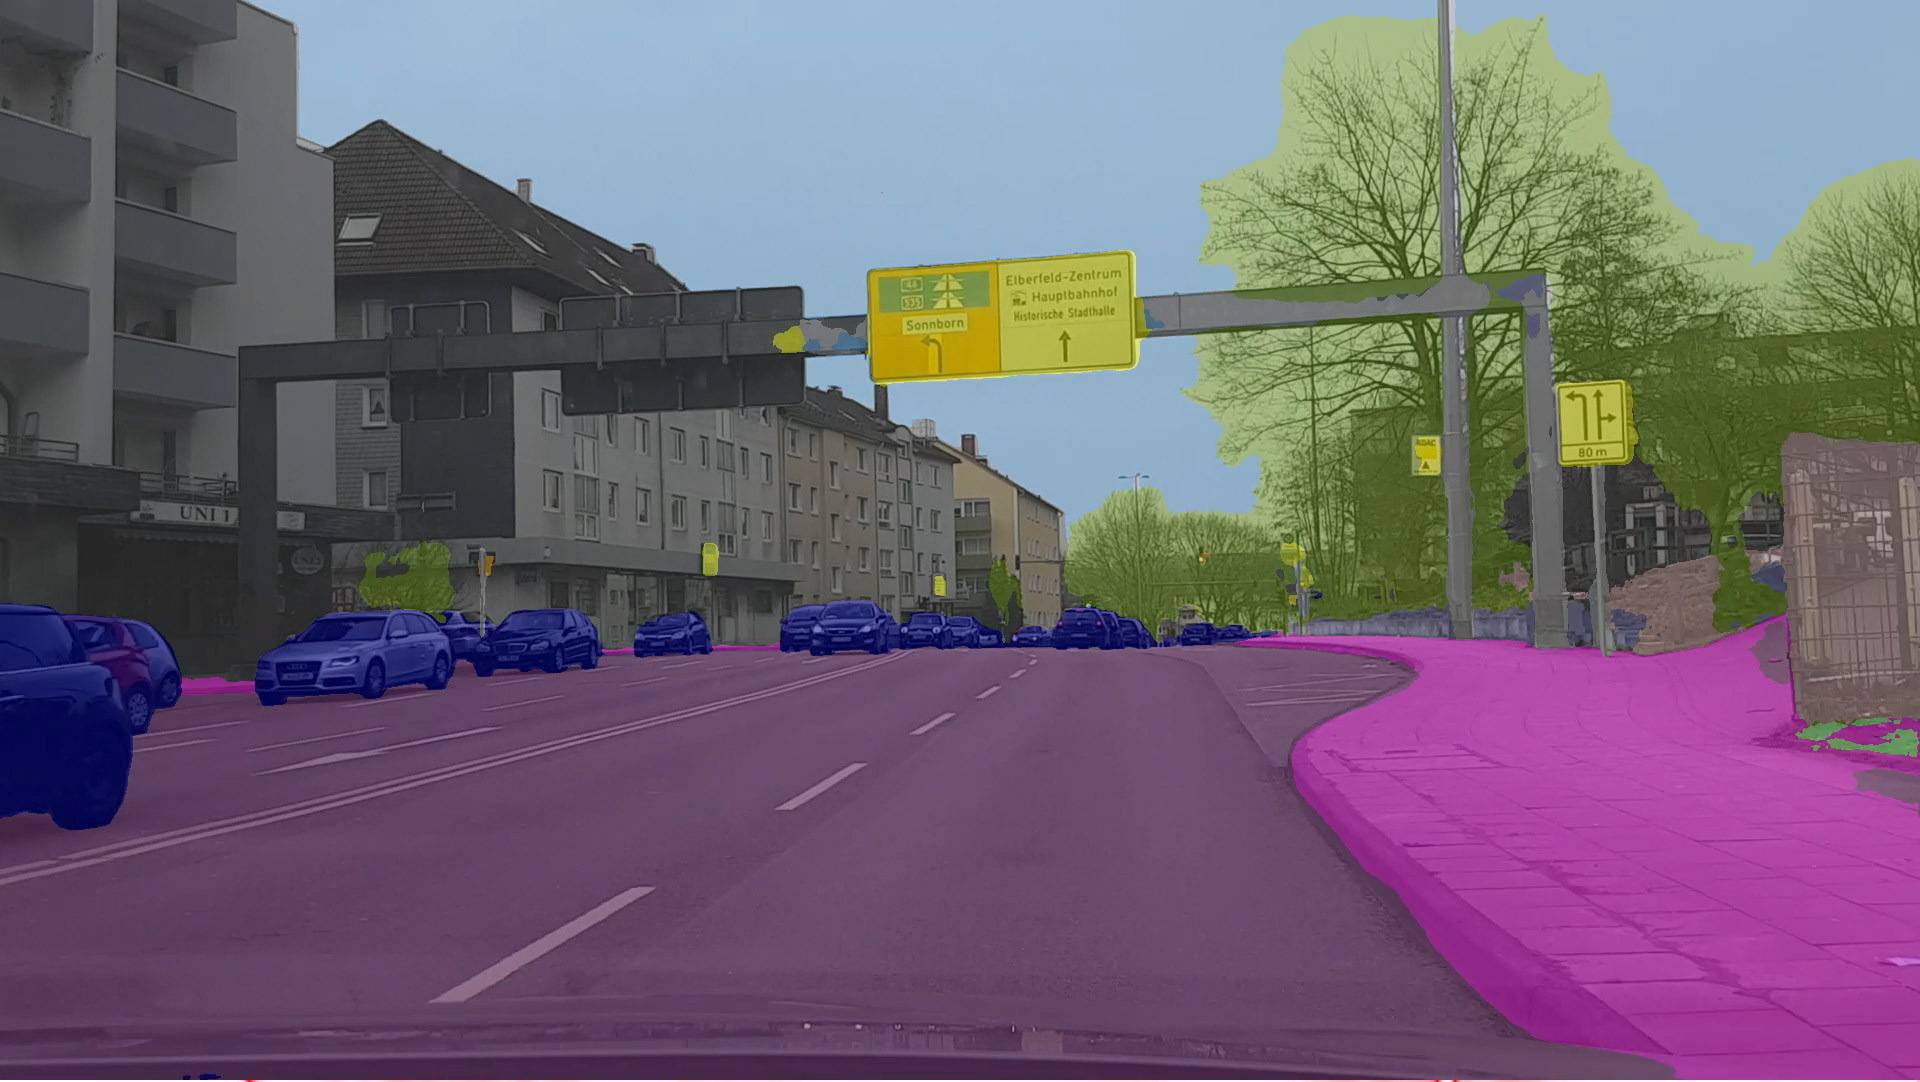 Semantische Segmentierung einer Straßenszene durch KI.